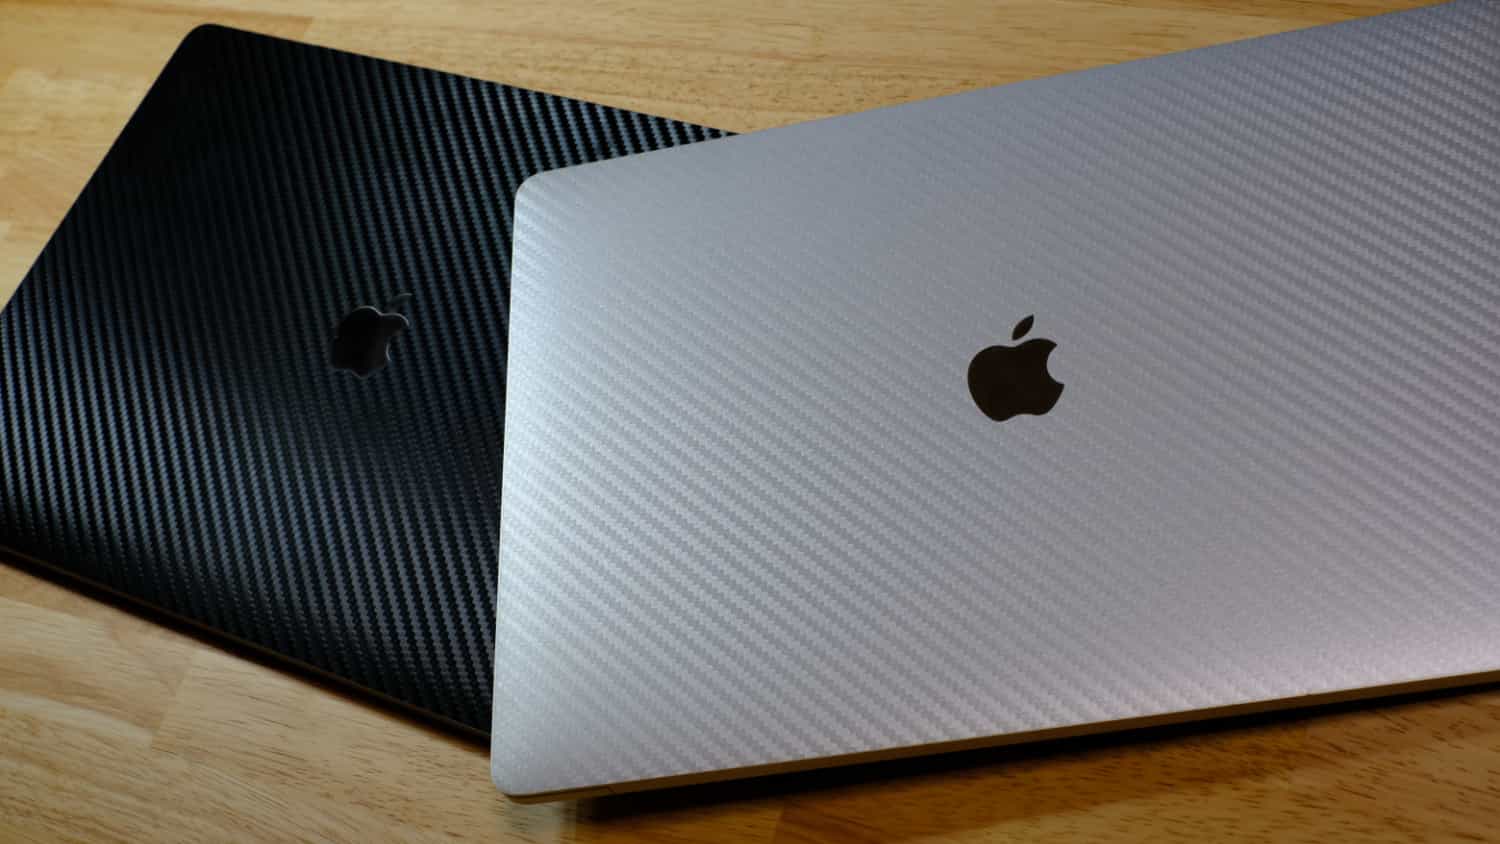 16インチ MacBook Pro 2019 が 2台あります